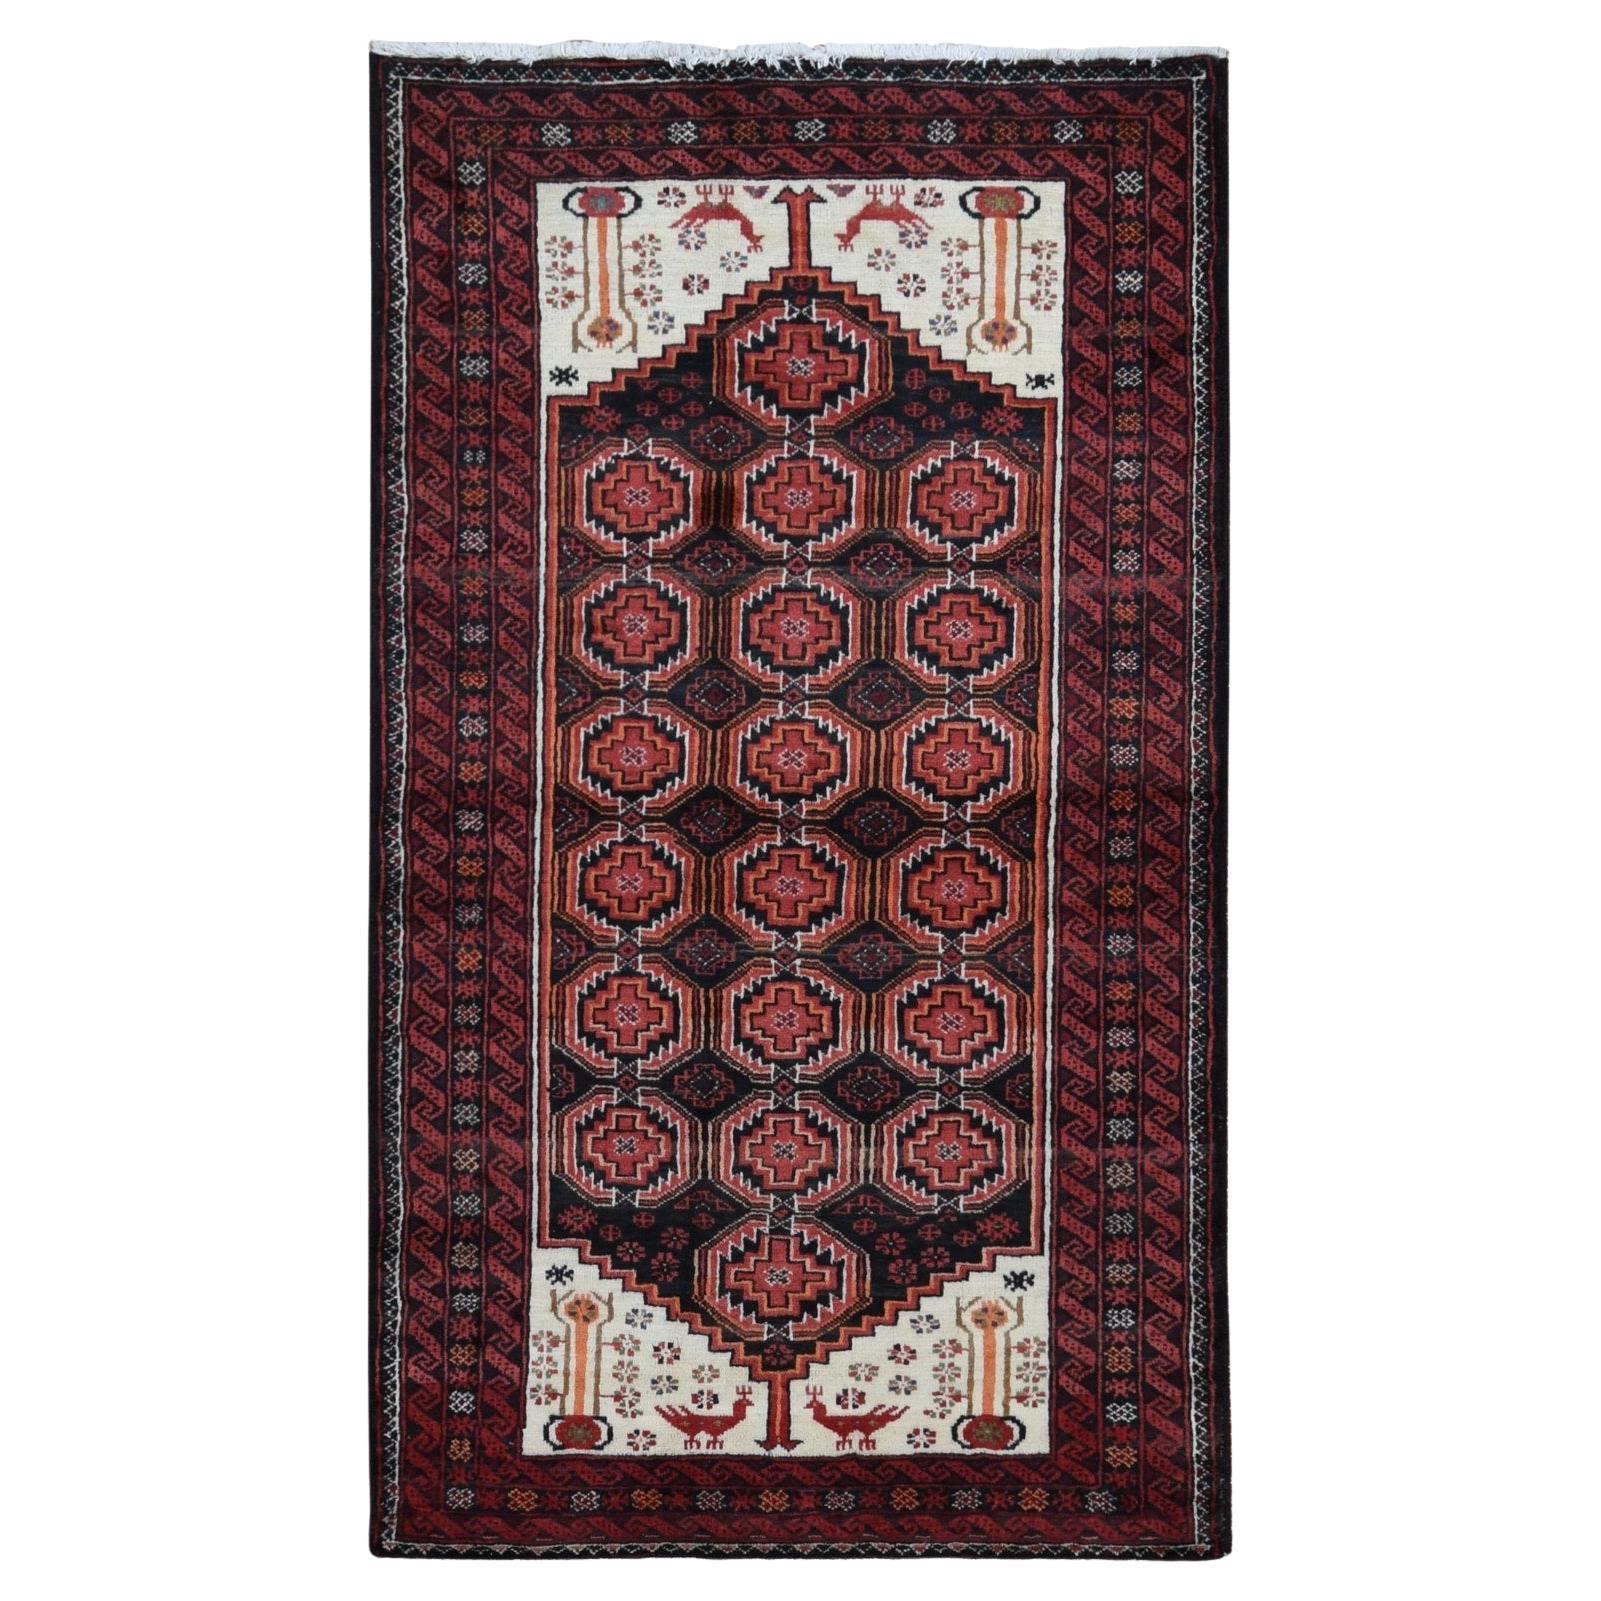 Prismatisch roter persischer, handgeknüpfter Vintage-Teppich aus reiner Wolle, rein, sauber und ohne Verschleiß